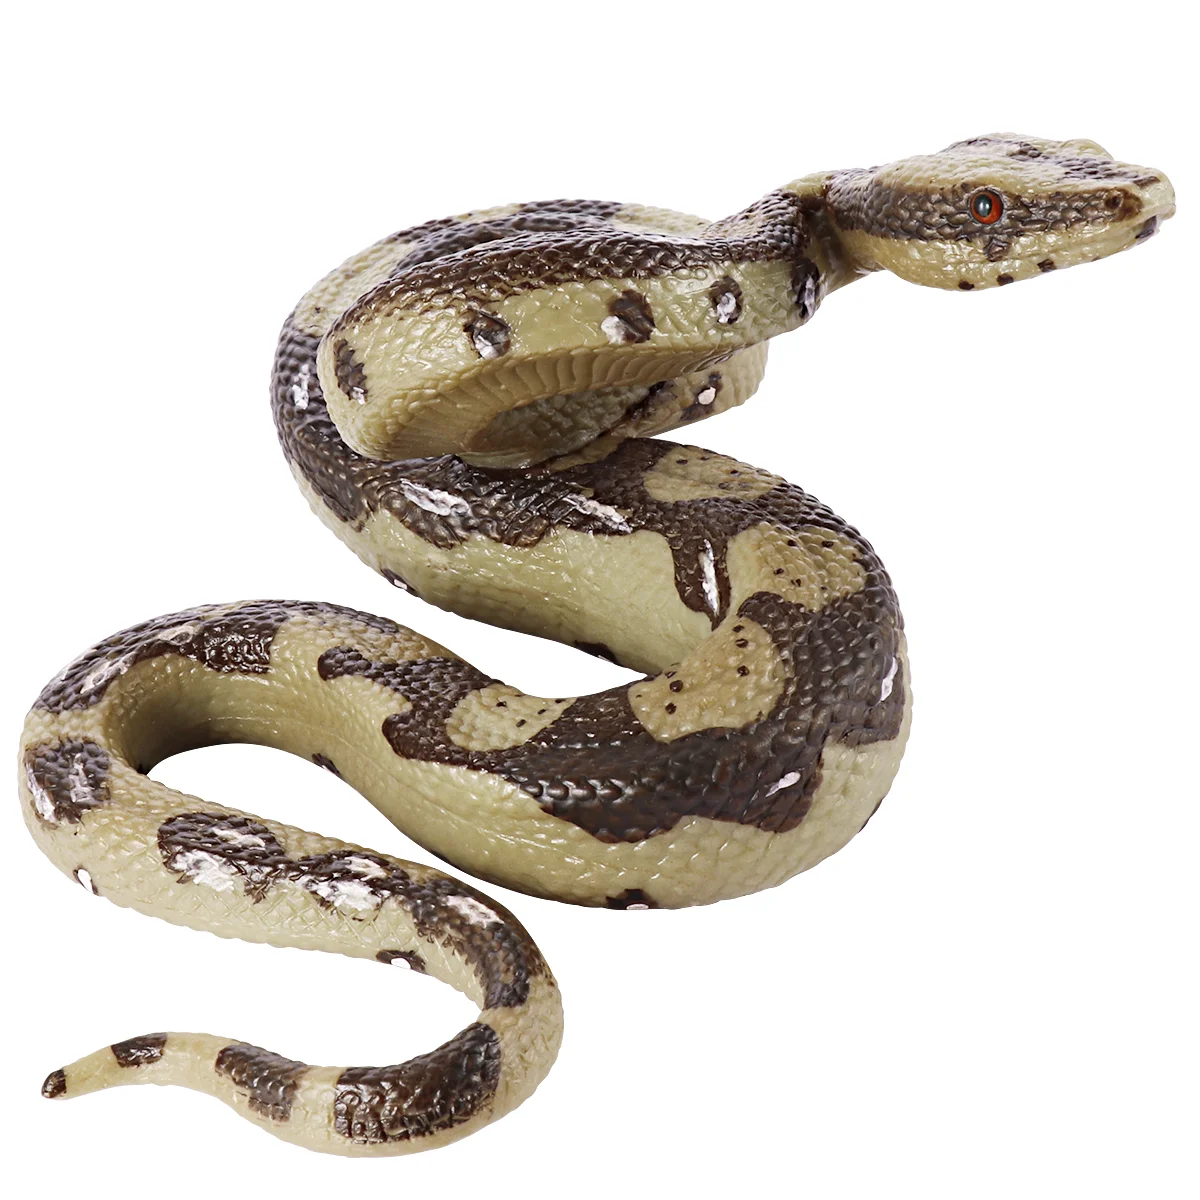 

Змея страшный реквизит-высокая имитация змеи для сада реквизит для пугающих птиц, приколов, искусственных искусств